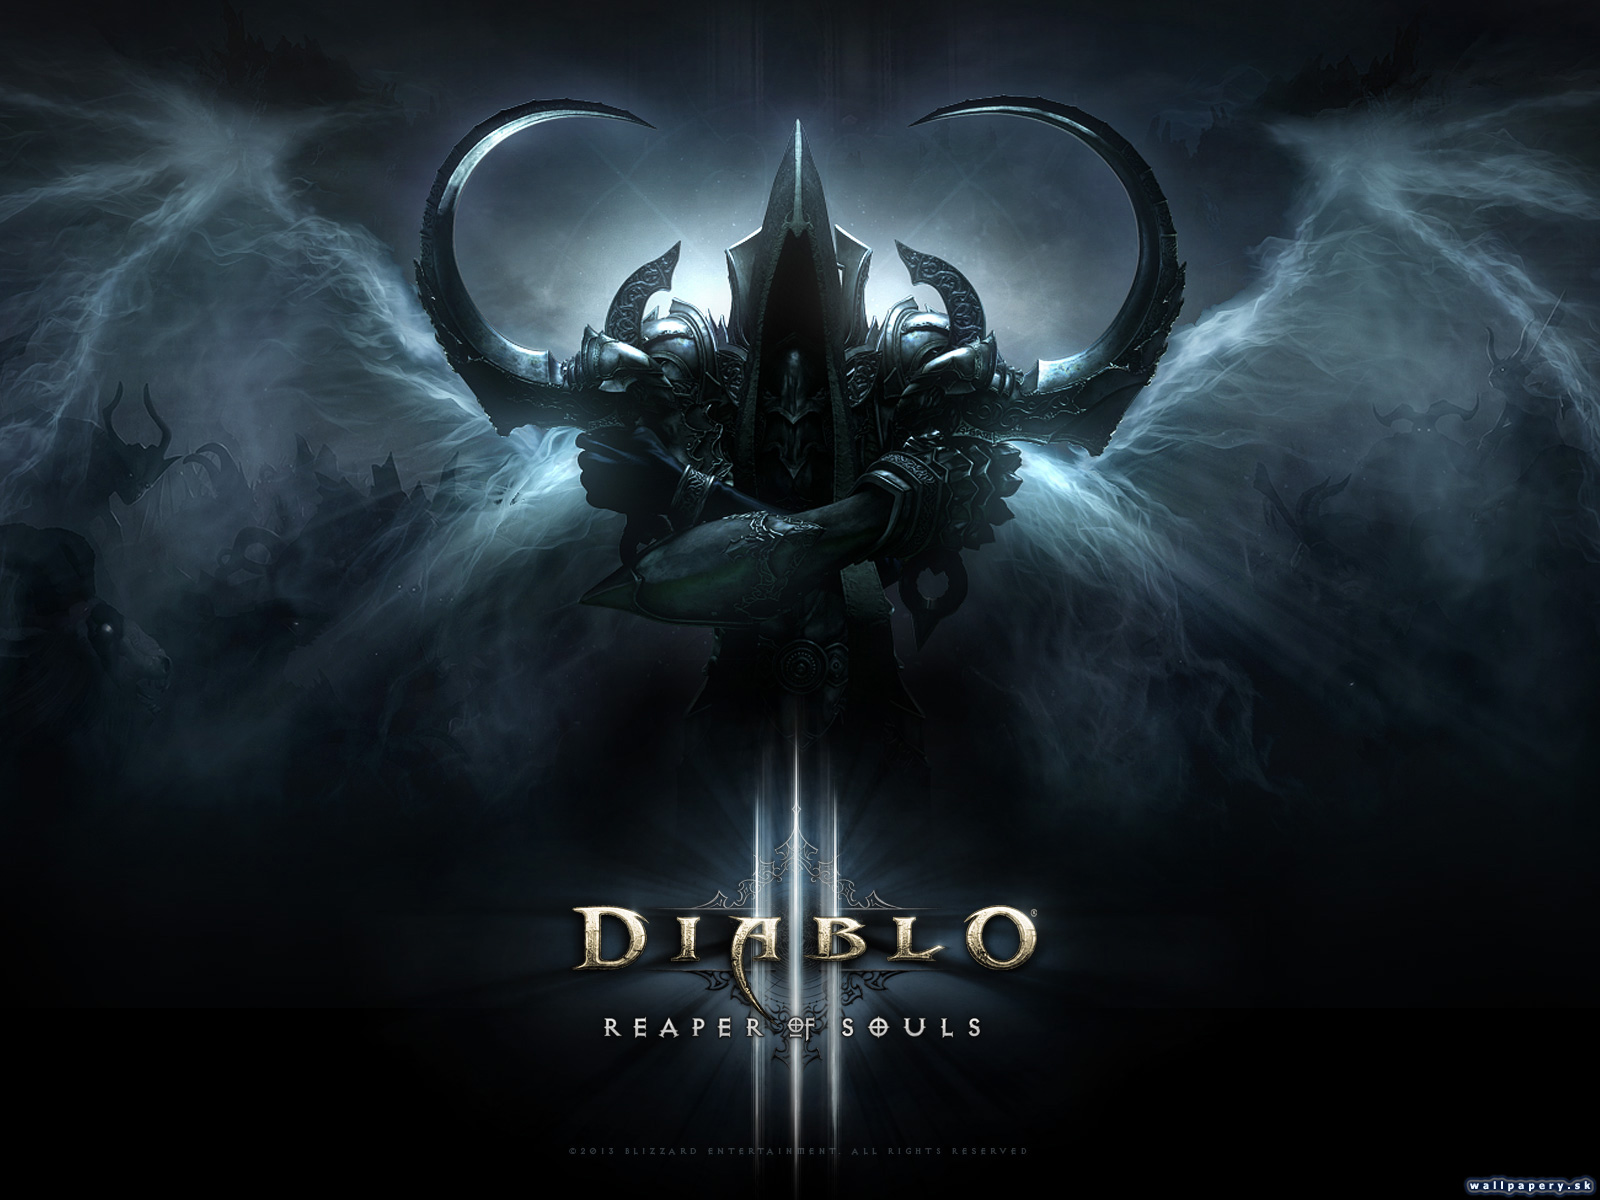 Diablo III: Reaper of Souls - wallpaper 1